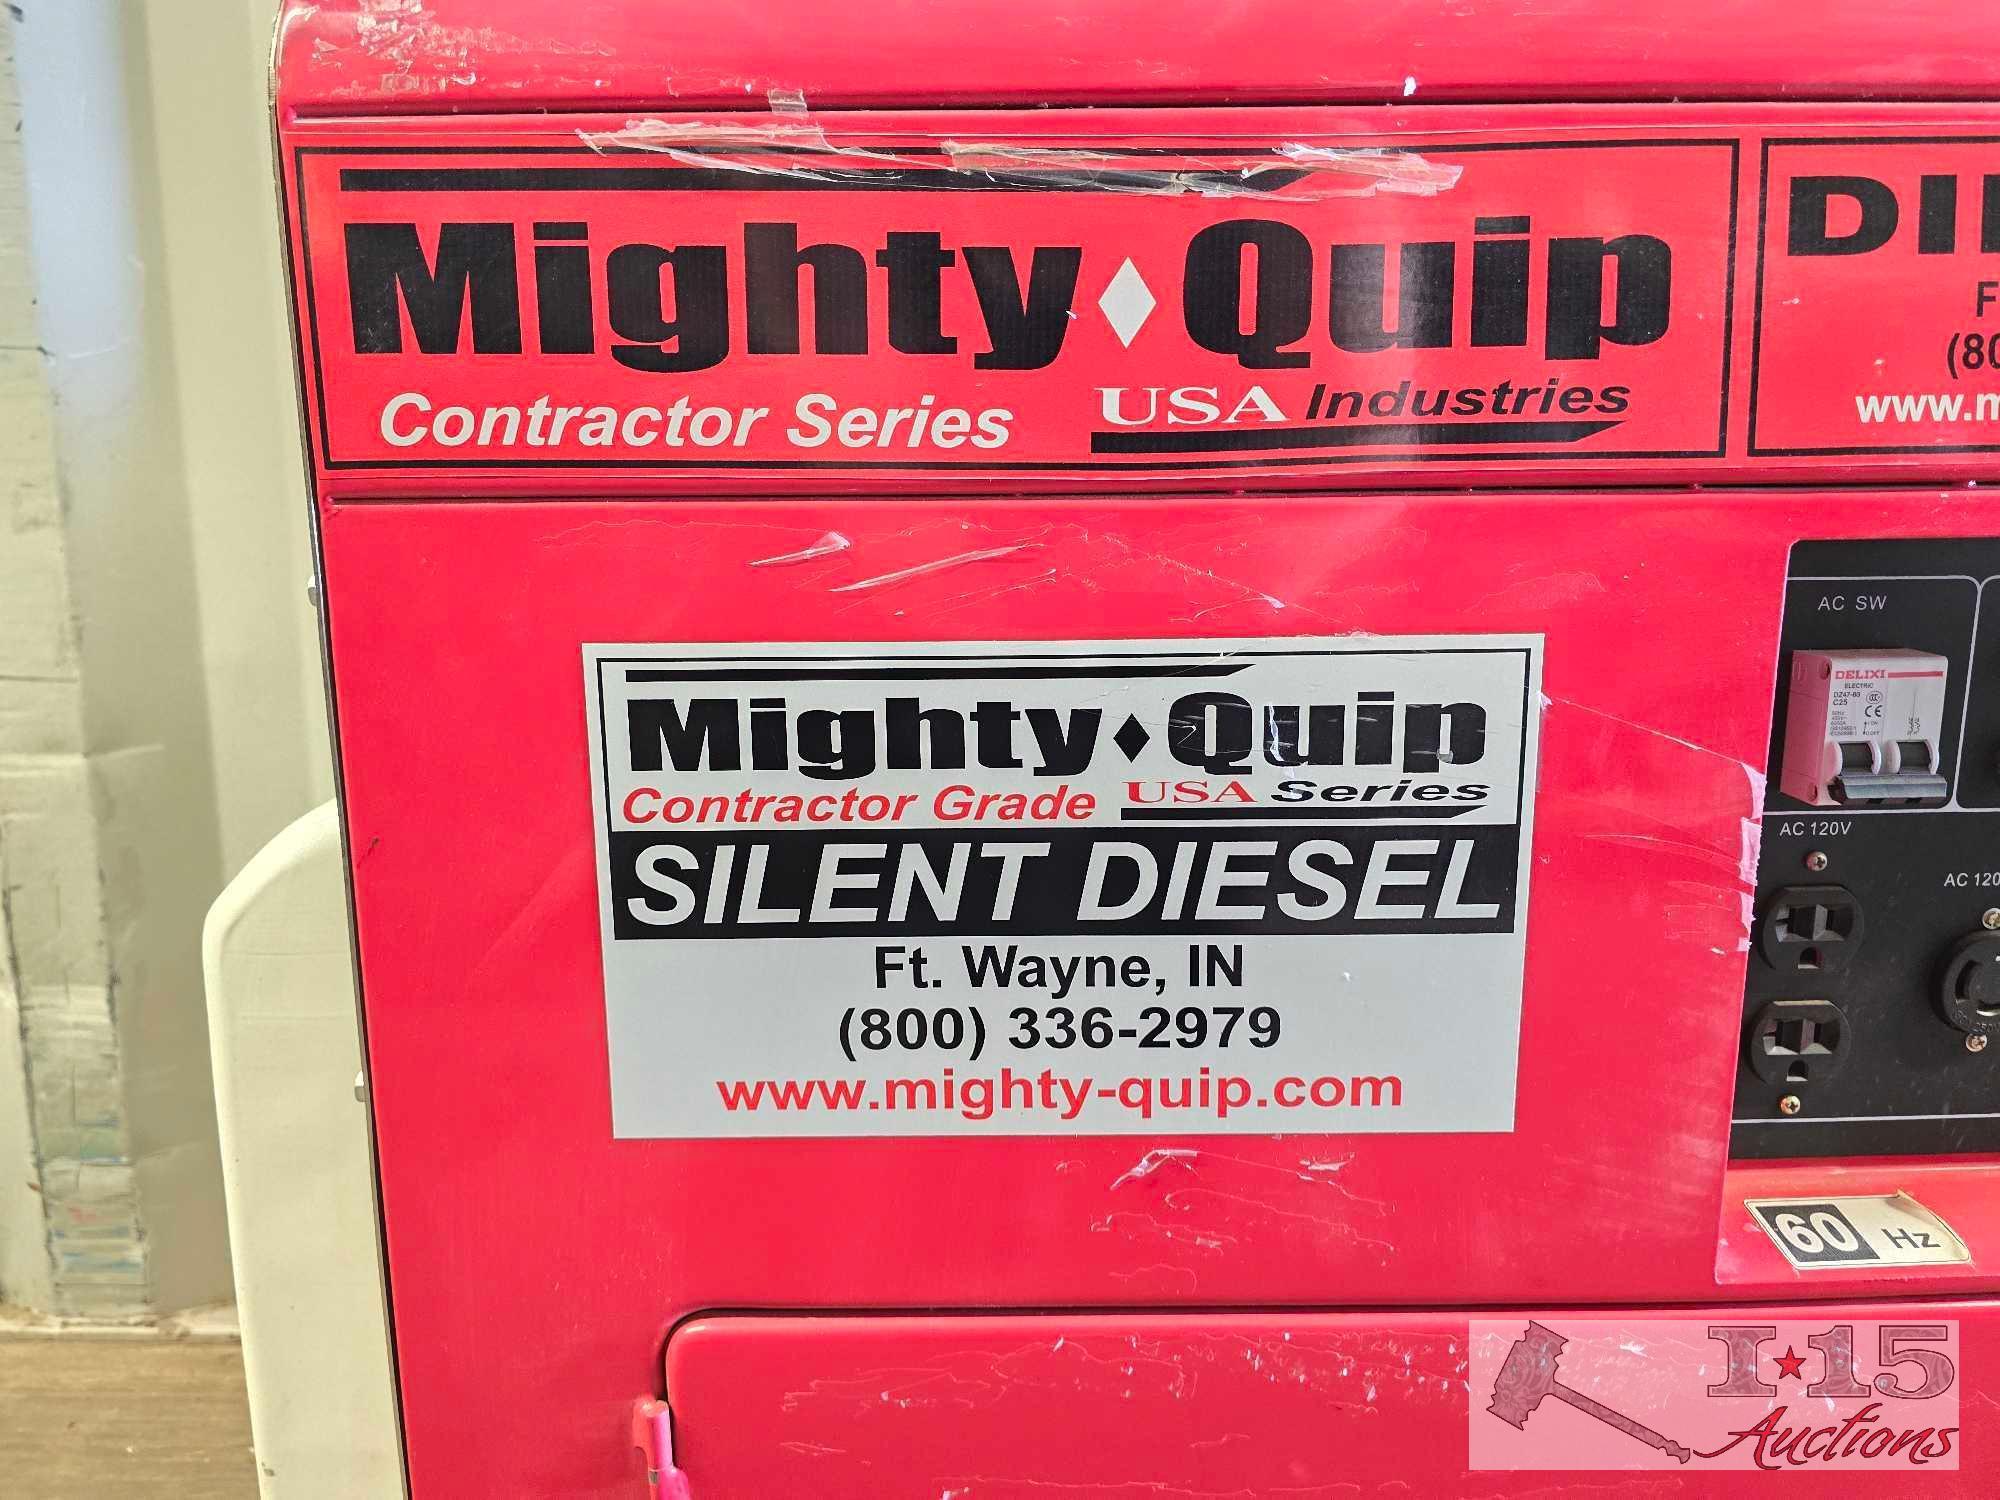 Mighty Quip Contractor Series Silent Diesel Generator